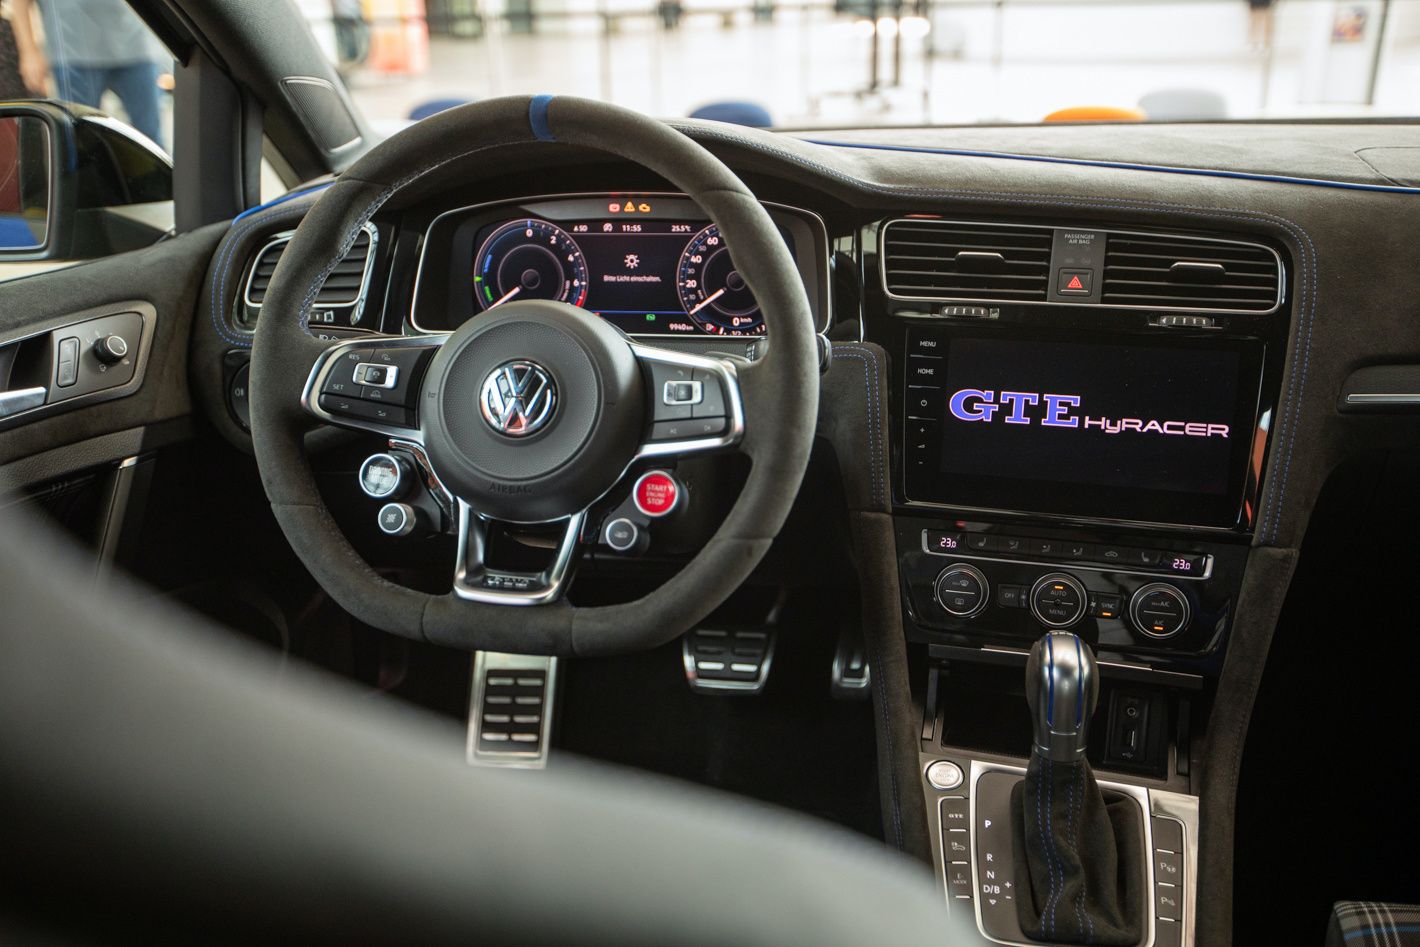 Volkswagen Golf GTE HyRACER Concept: Una de las sorpresas que estaban preparadas para el Wörthersee GTI Meet